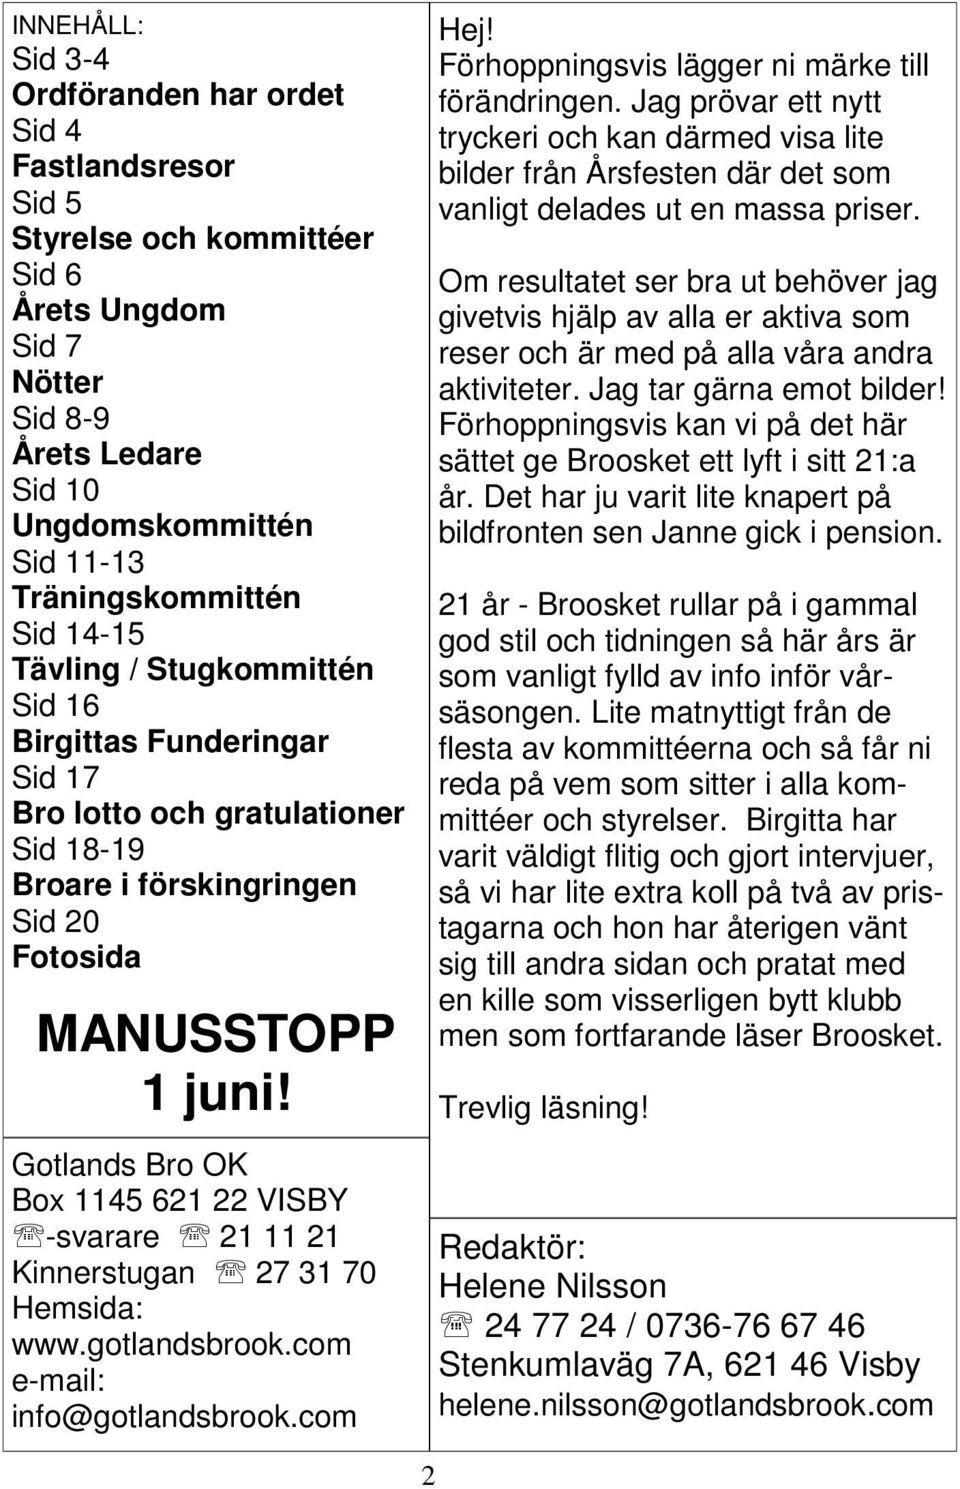 Gotlands Bro OK Box 1145 621 22 VISBY -svarare 21 11 21 Kinnerstugan 27 31 70 Hemsida: www.gotlandsbrook.com e-mail: info@gotlandsbrook.com Hej! Förhoppningsvis lägger ni märke till förändringen.